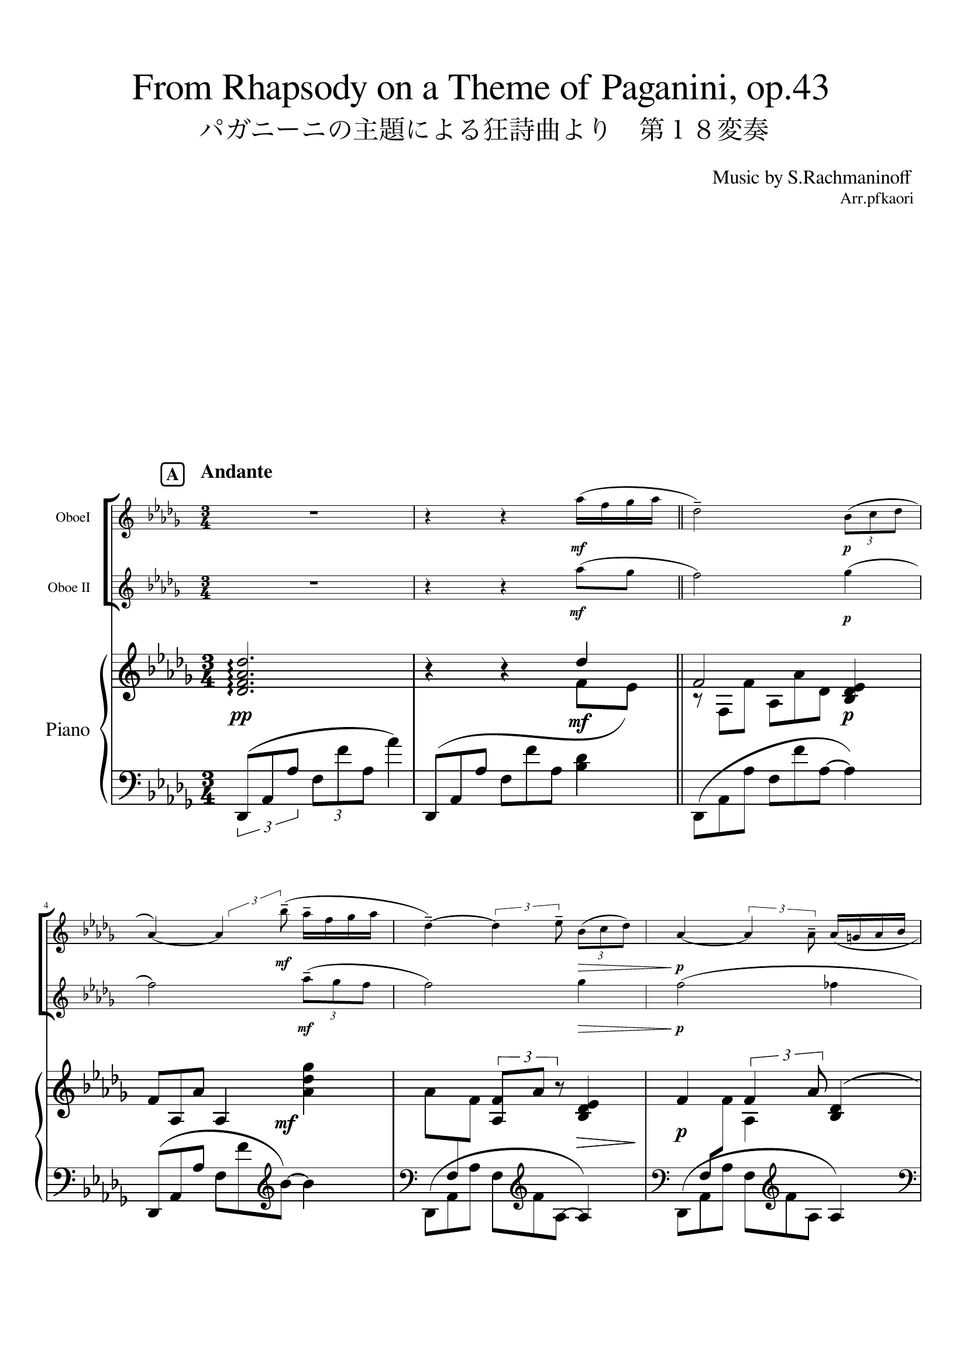 作曲:セルゲイ・ - パガニーニの主題による狂詩曲より第18変奏 (ピアノトリオ/オーボエデュオ) by pfkaori